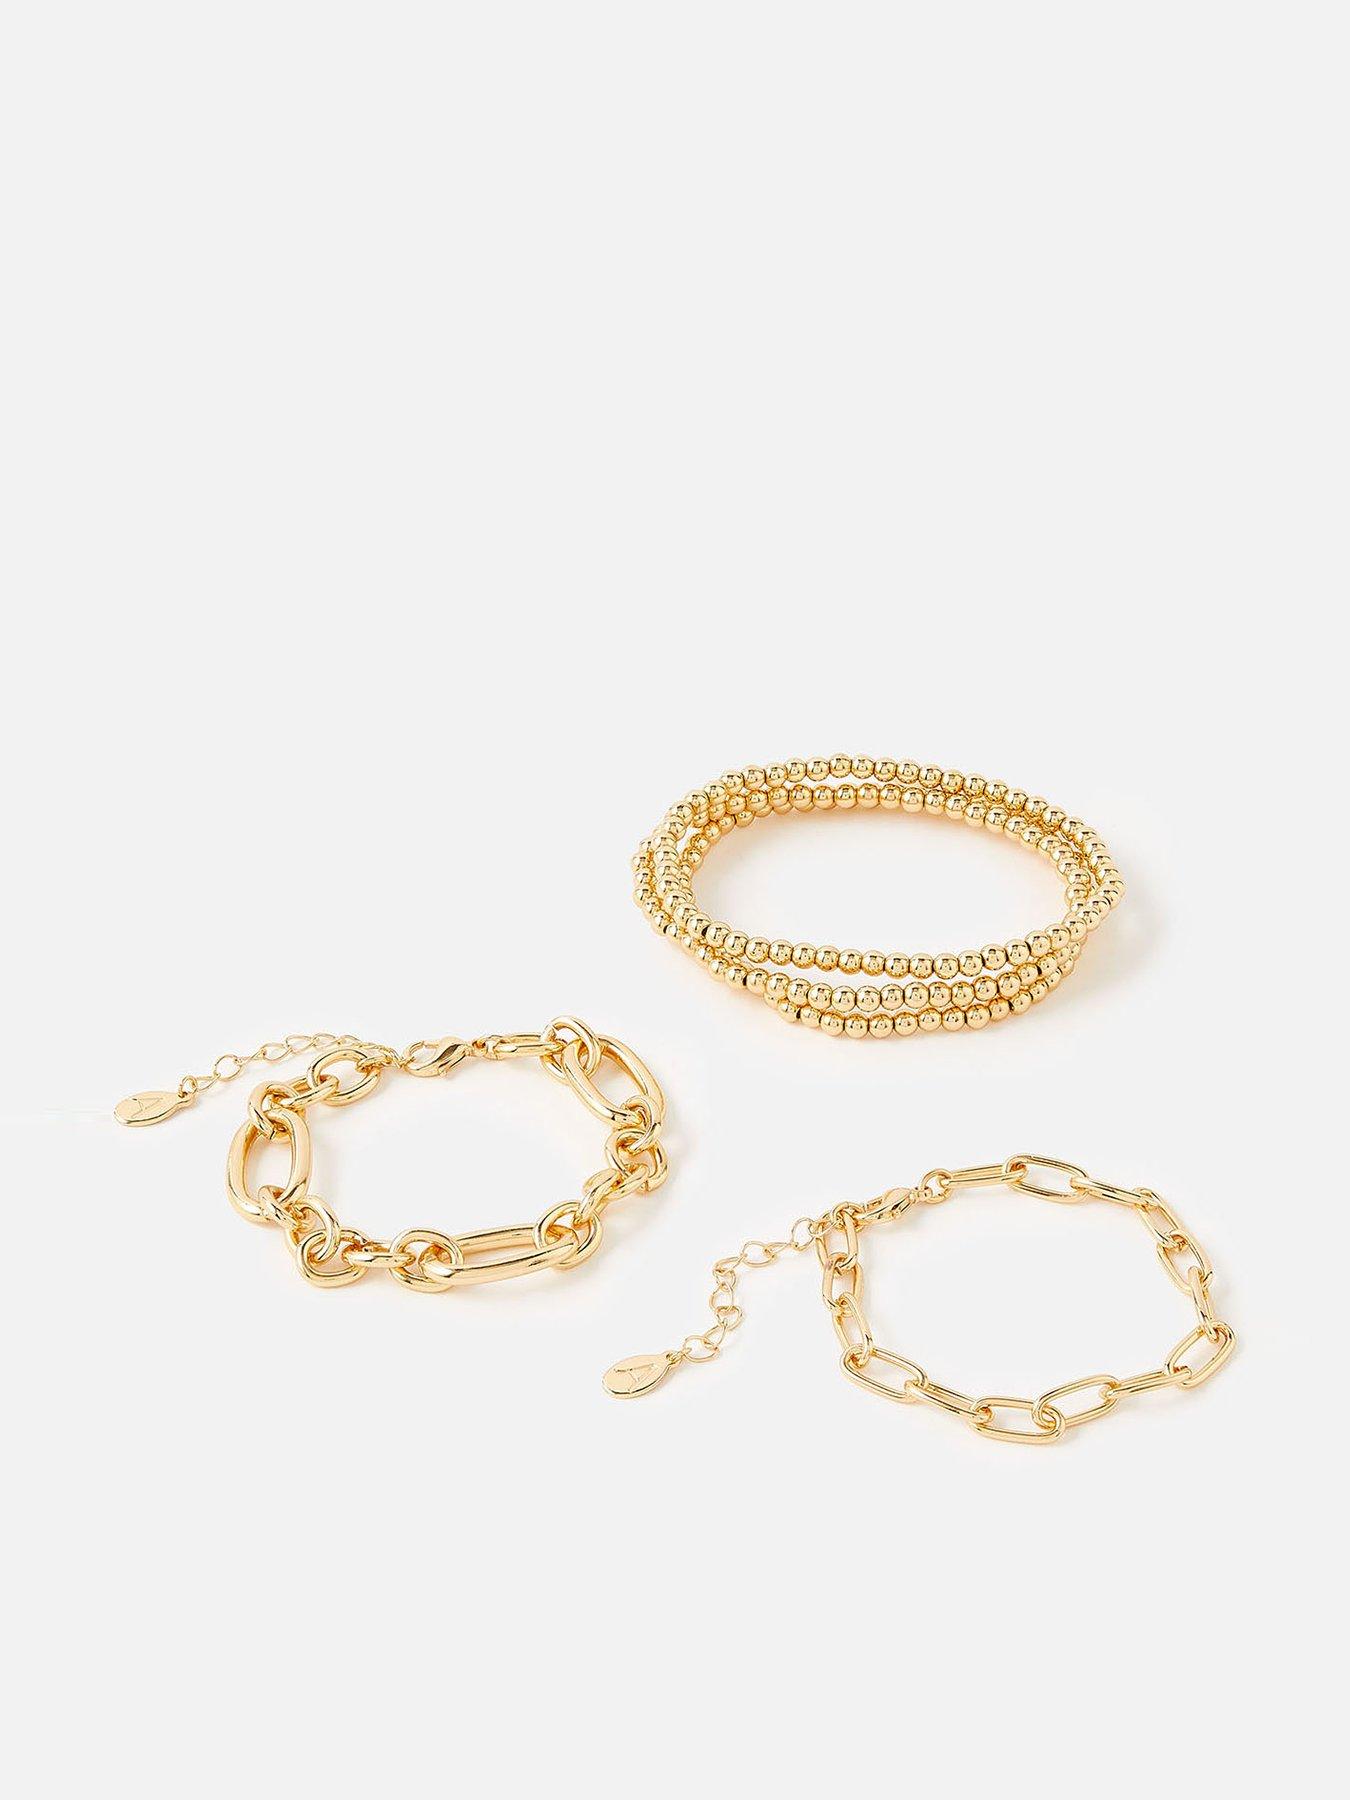 WOMEN FASHION Accessories Bracelet NoName bracelet Golden Single discount 63% 